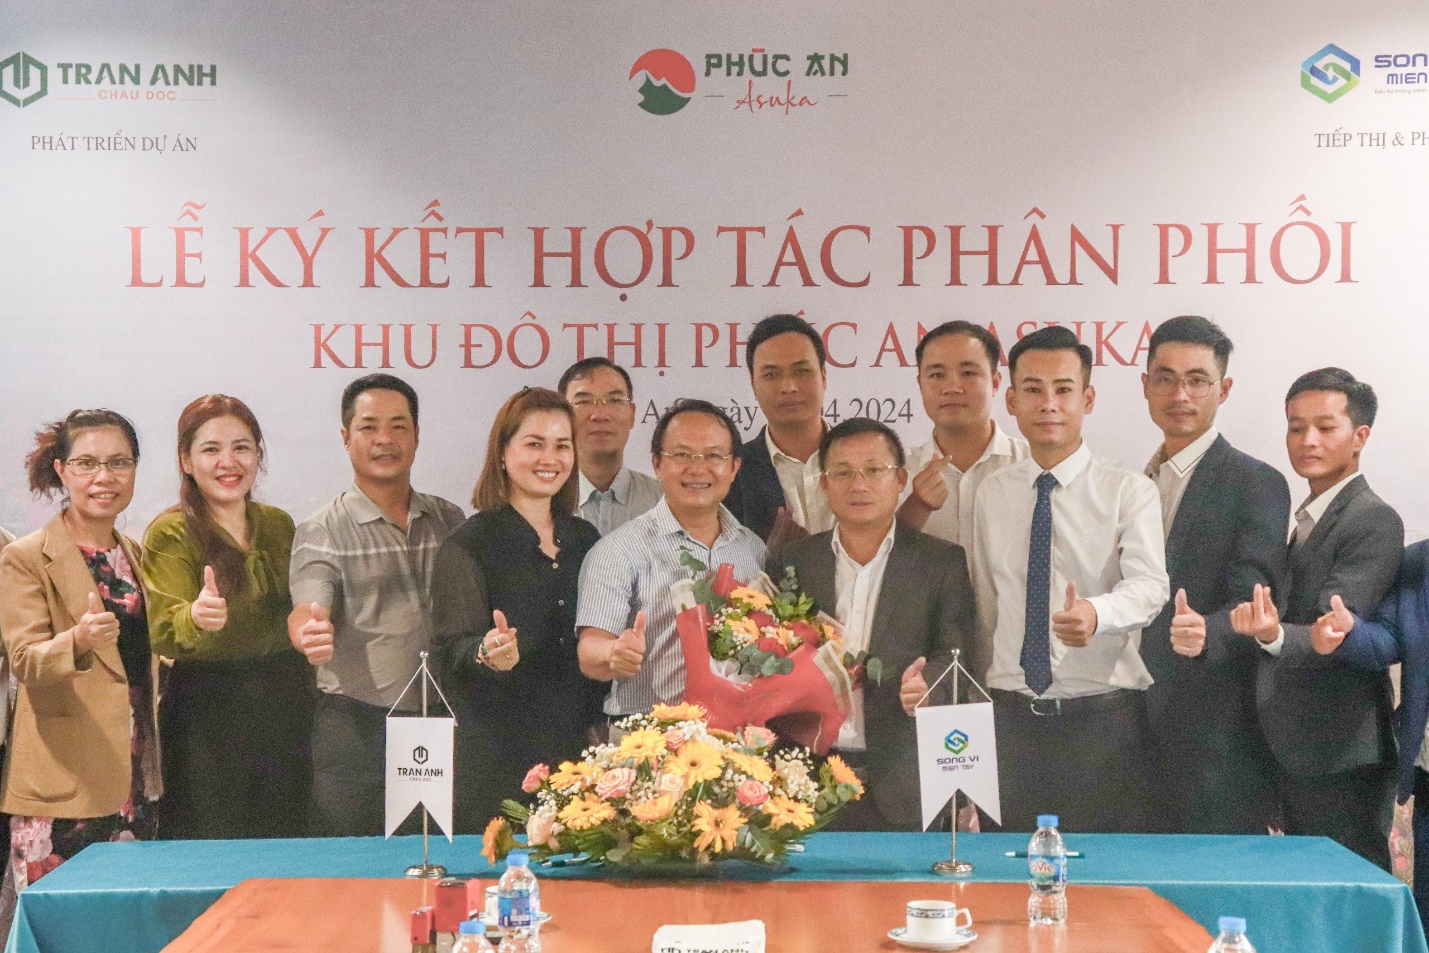 An Giang: Trần Anh Group và Song Vi Group miền Tây ký kết hợp tác dự án Khu đô thị Phúc An Asuka- Ảnh 1.